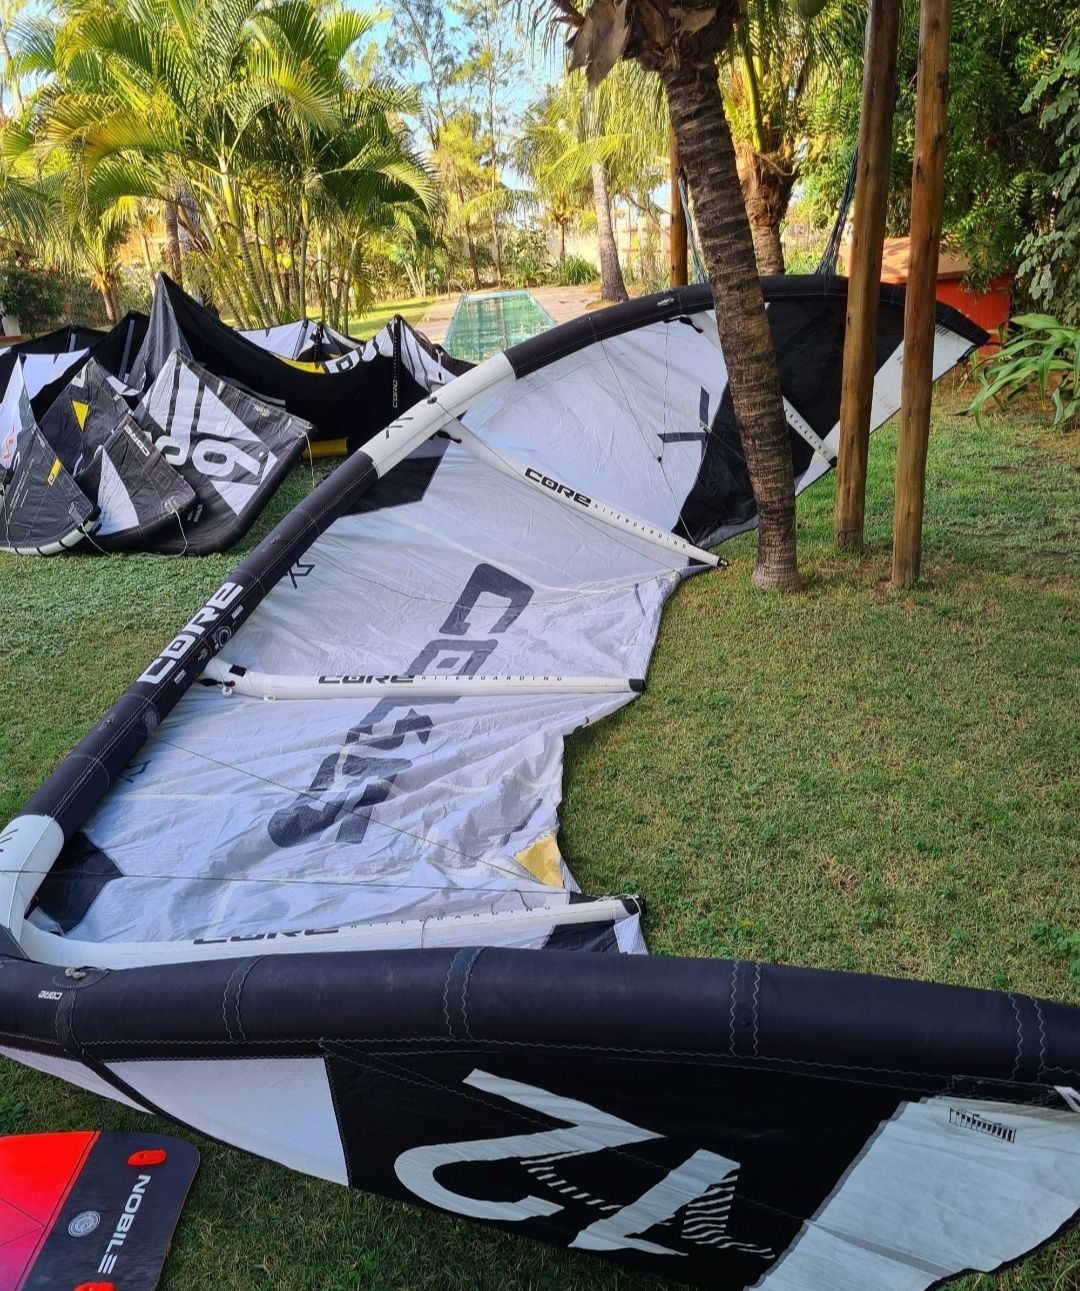 latawiec kite core xr5 12m